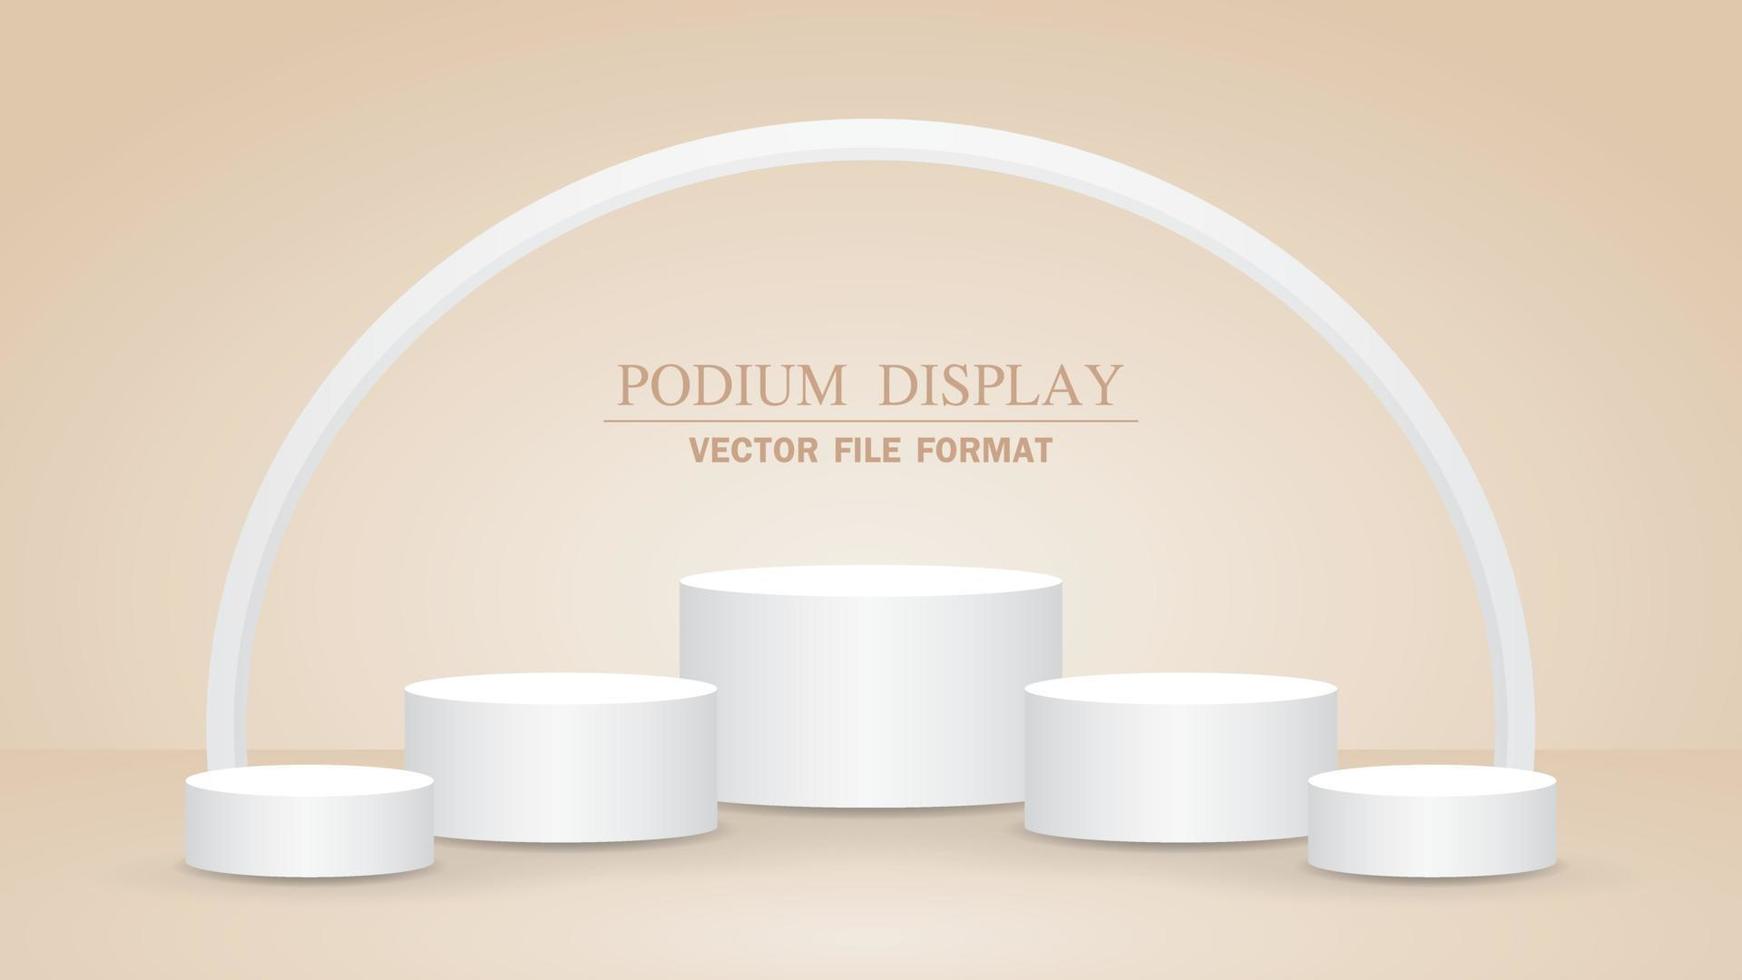 affichage de podium blanc minimal avec vecteur d'illustration 3d en arc pour mettre votre objet sur fond de couleur marron nude